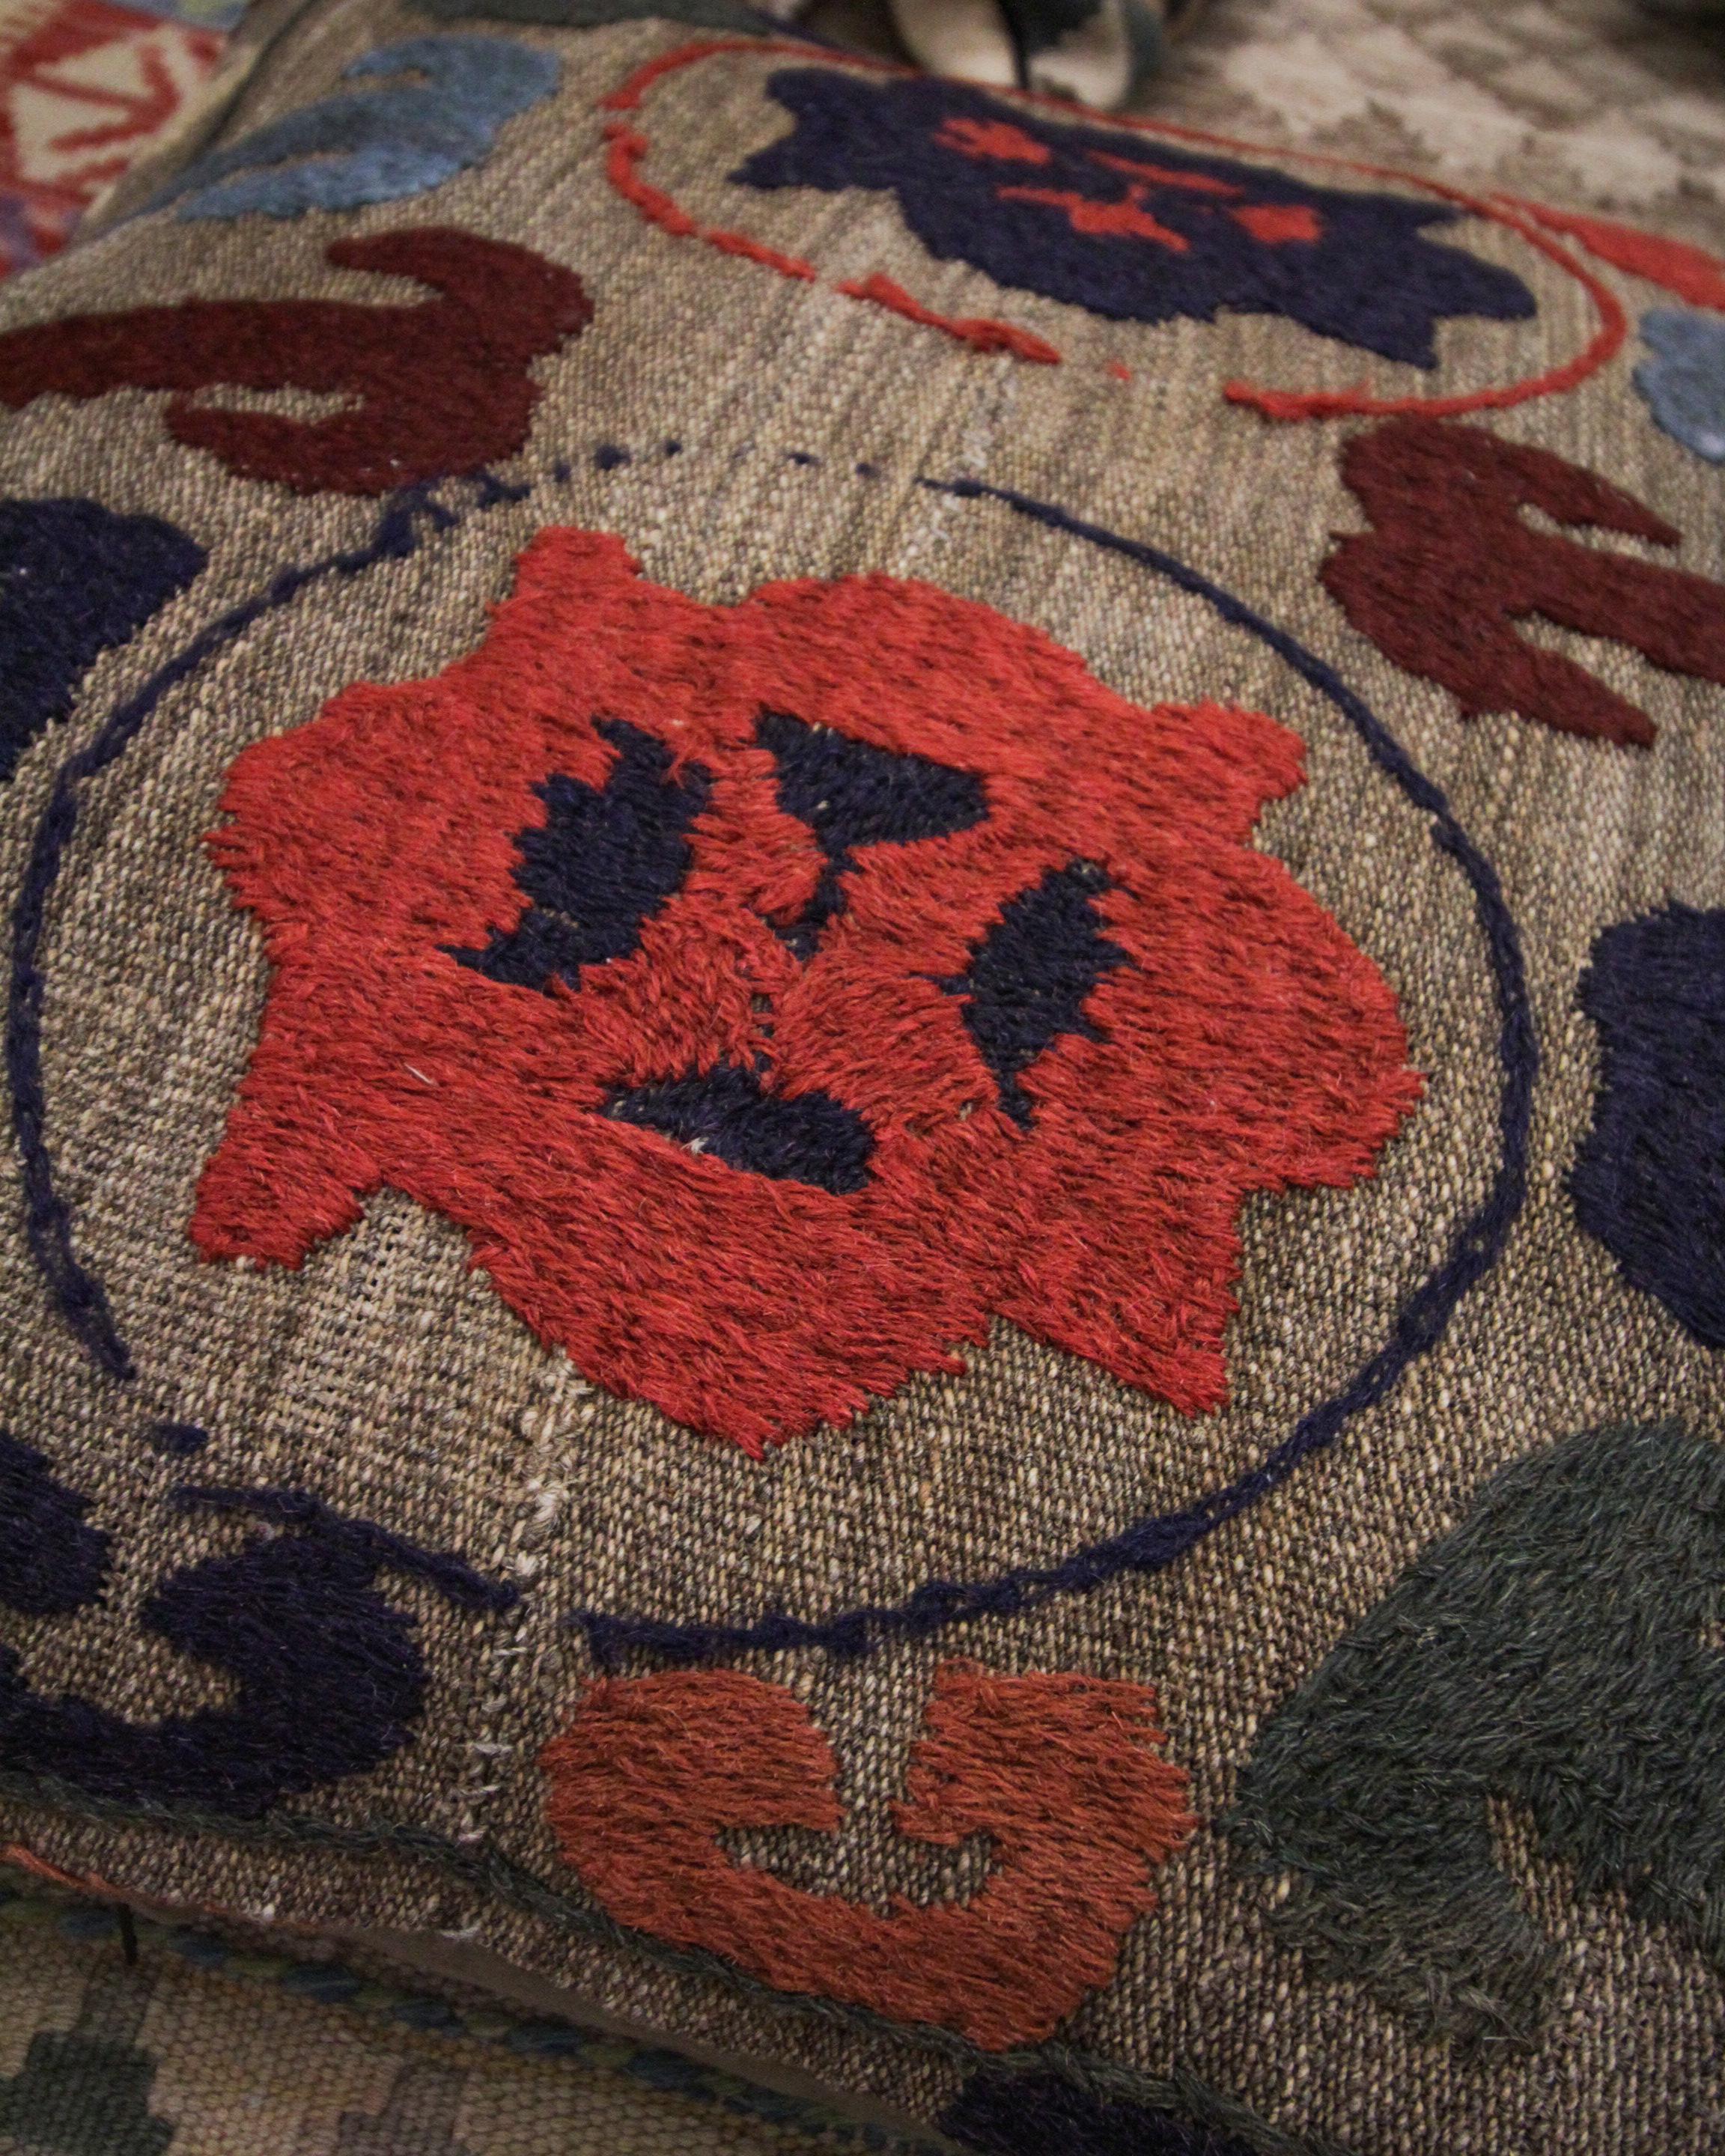 Cette housse de coussin tribale unique est une pièce plus grande adaptée à un lit ou un canapé. Tissé avec un motif tribal unique et répétitif aux accents de brun, rouge, beige, orange et vert sur un fond beige-brun. La palette de couleurs et le